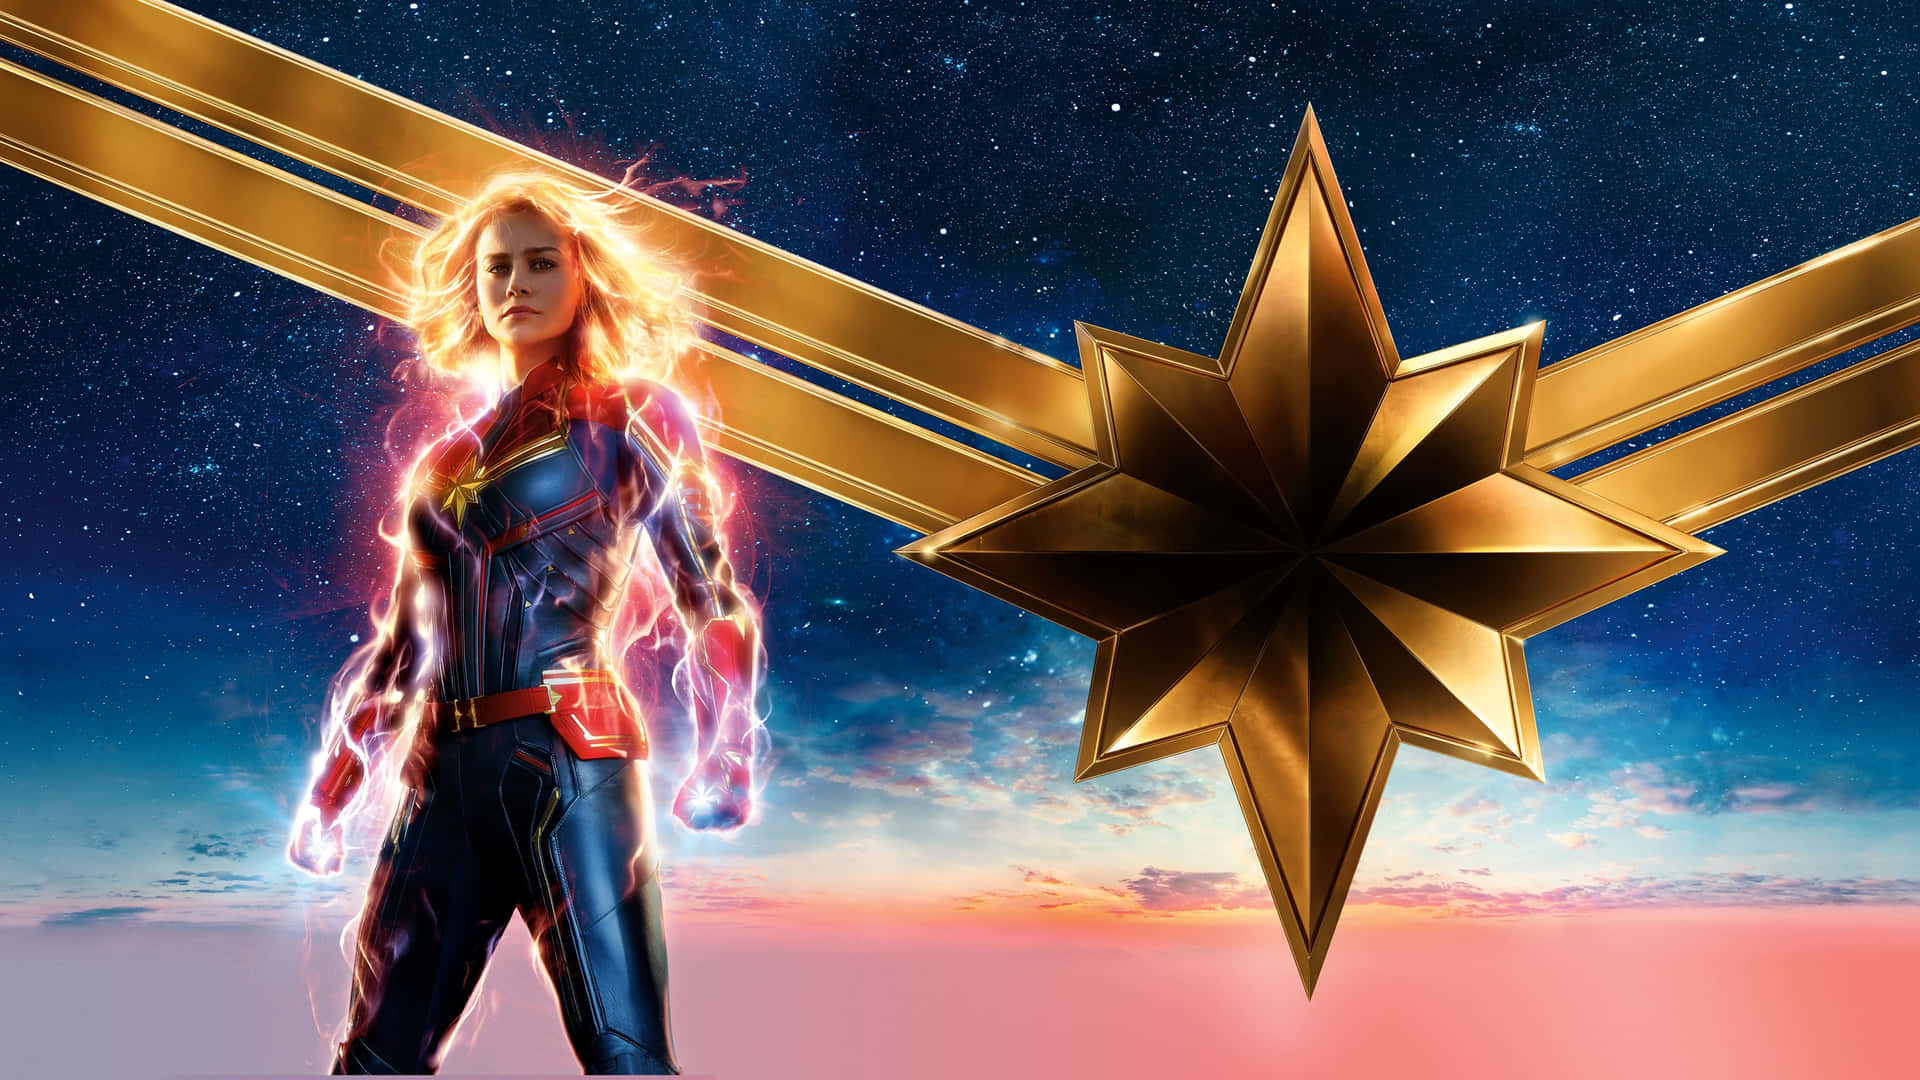 Hintergrundbildder Weiblichen Superheldin Captain Marvel